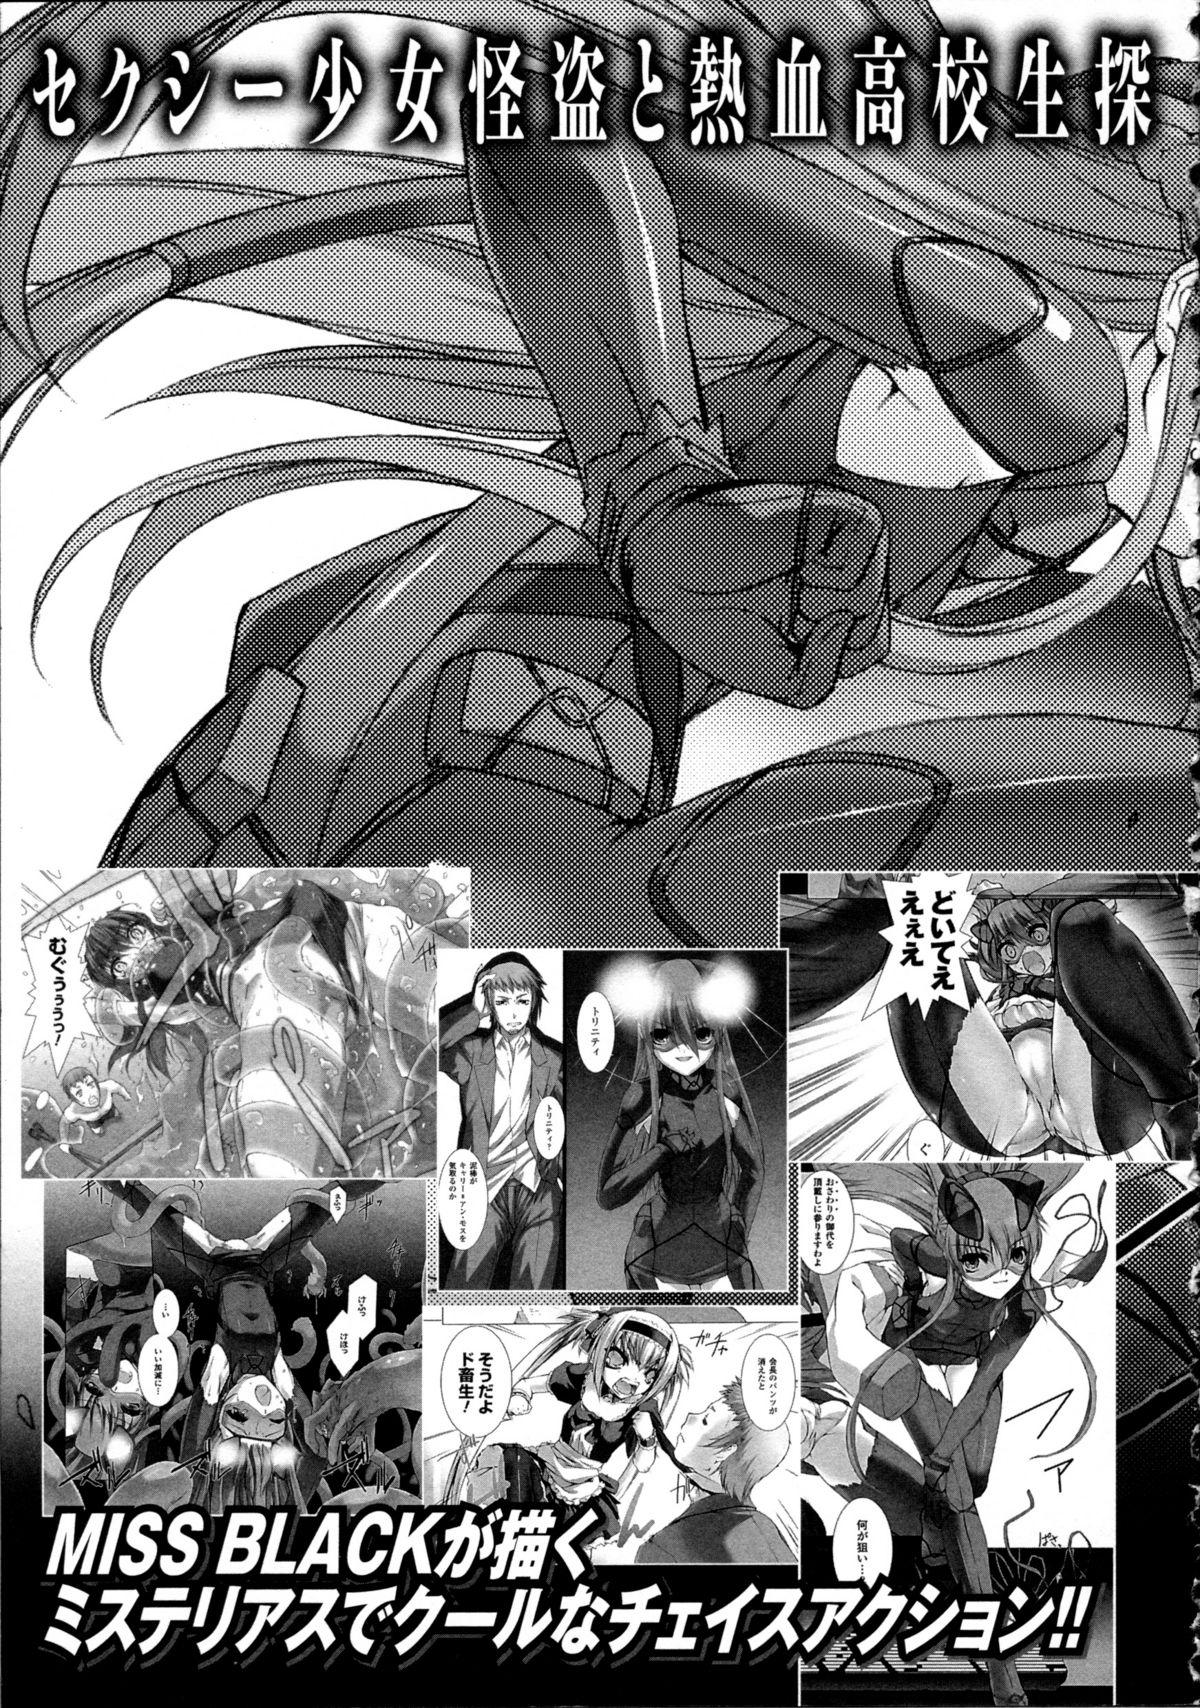 Butt Fuck Choukou Sennin Haruka Kokoro no Maki - Beat blades haruka Pretty - Page 242